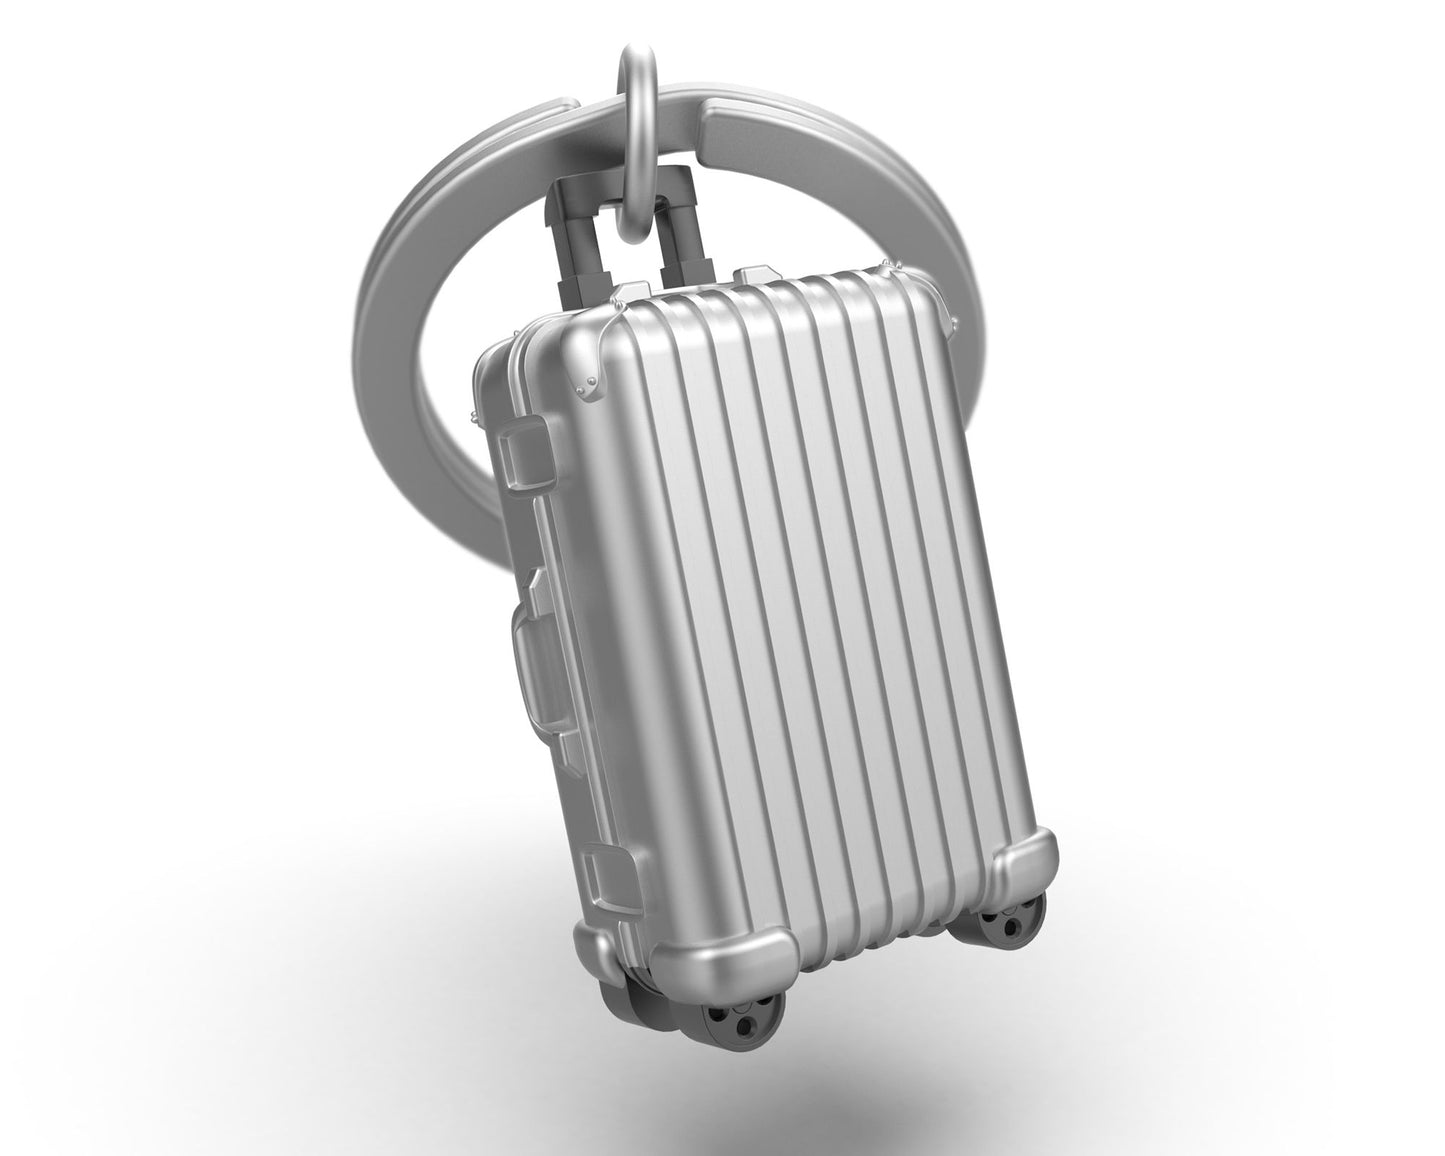 Suitcase key ring